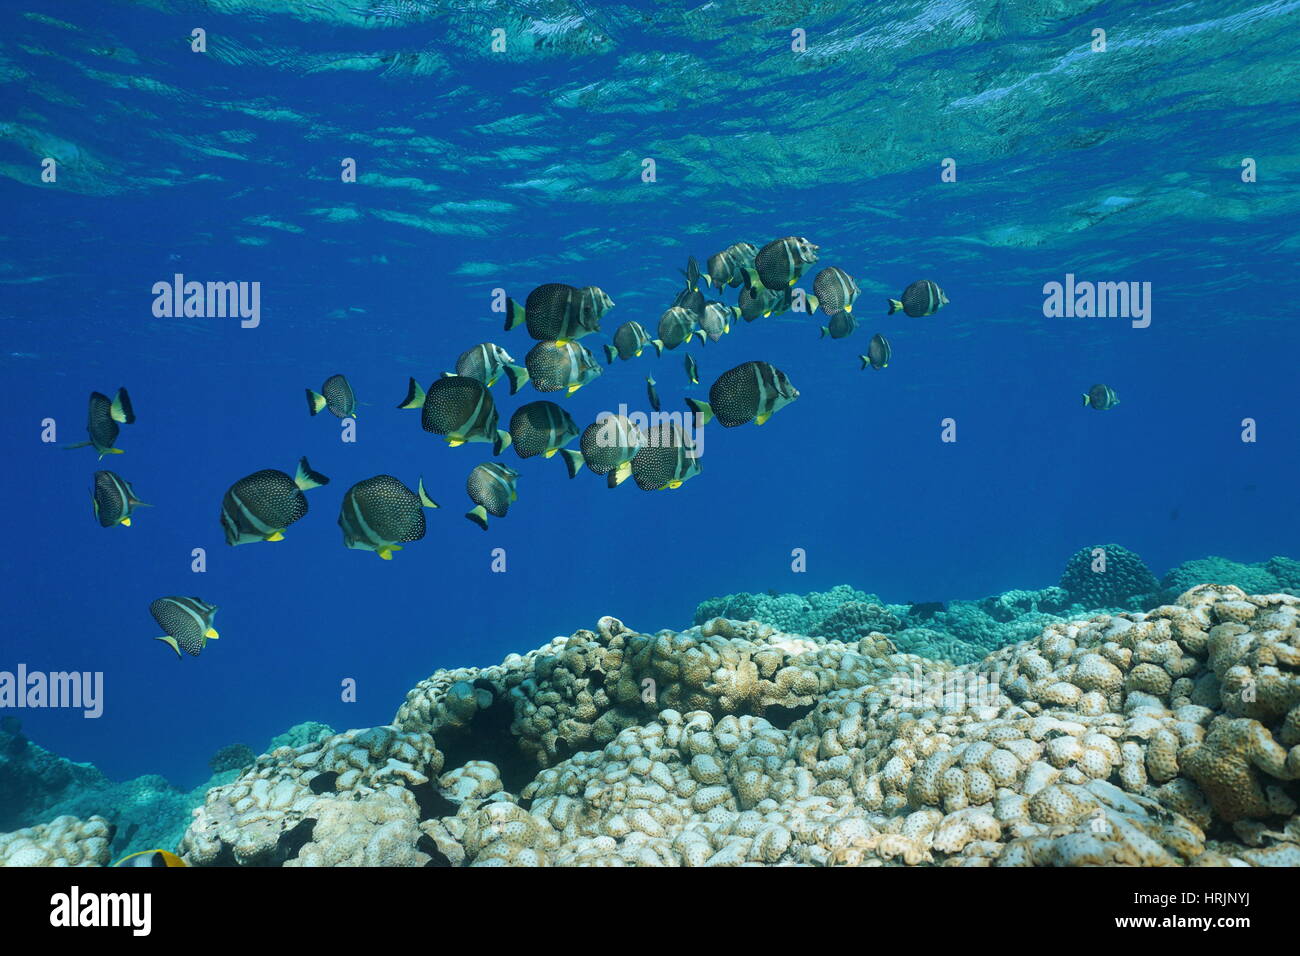 Subacquea oceano Pacifico secca di pesce whitespotted, surgeonfish Acanthurus guttatus, su una scogliera di corallo, Rangiroa, Tuamotu, Polinesia Francese Foto Stock